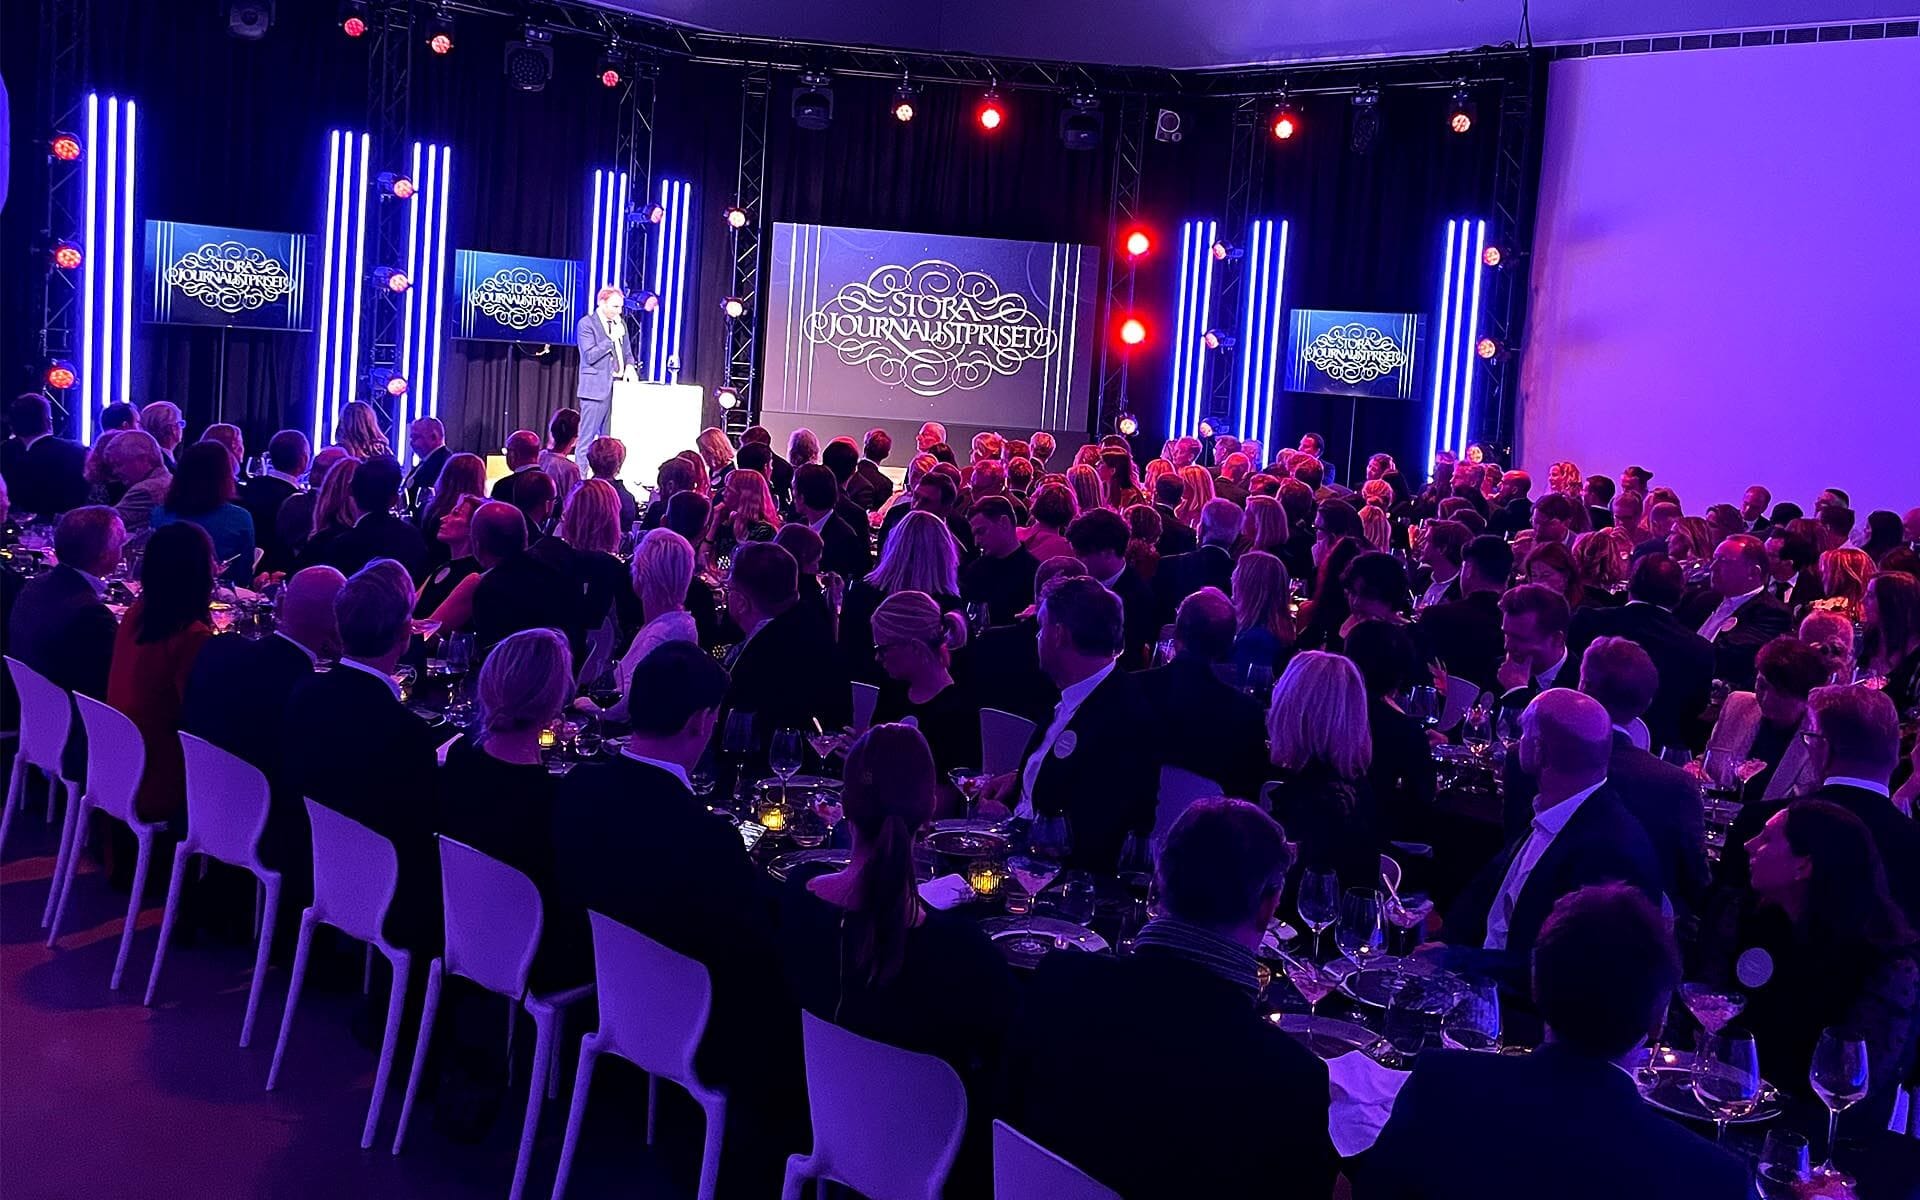 Stora Journalistpriset är ett hybridmöte med 300 gäster på plats i Bonniers Konsthall samtidigt som det sänds online